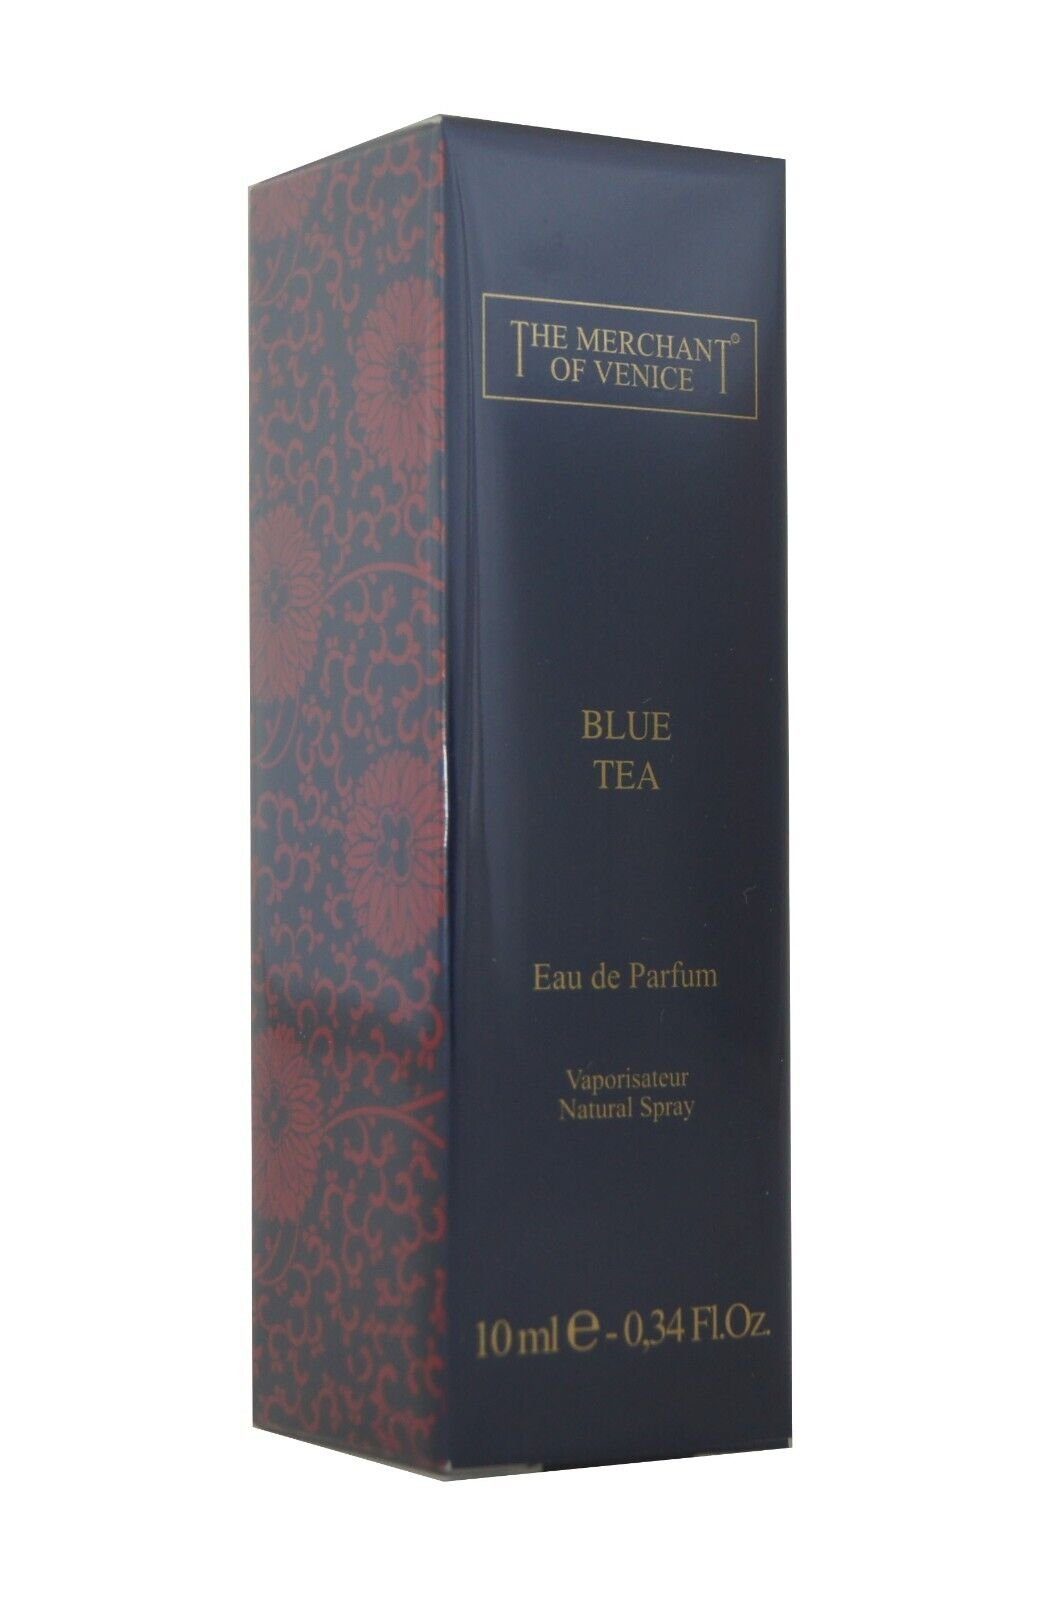 edp Parfum Eau of Venice Merchant The Blue 10ml. Merchant Parfum Venice De The de Of Tea Eau